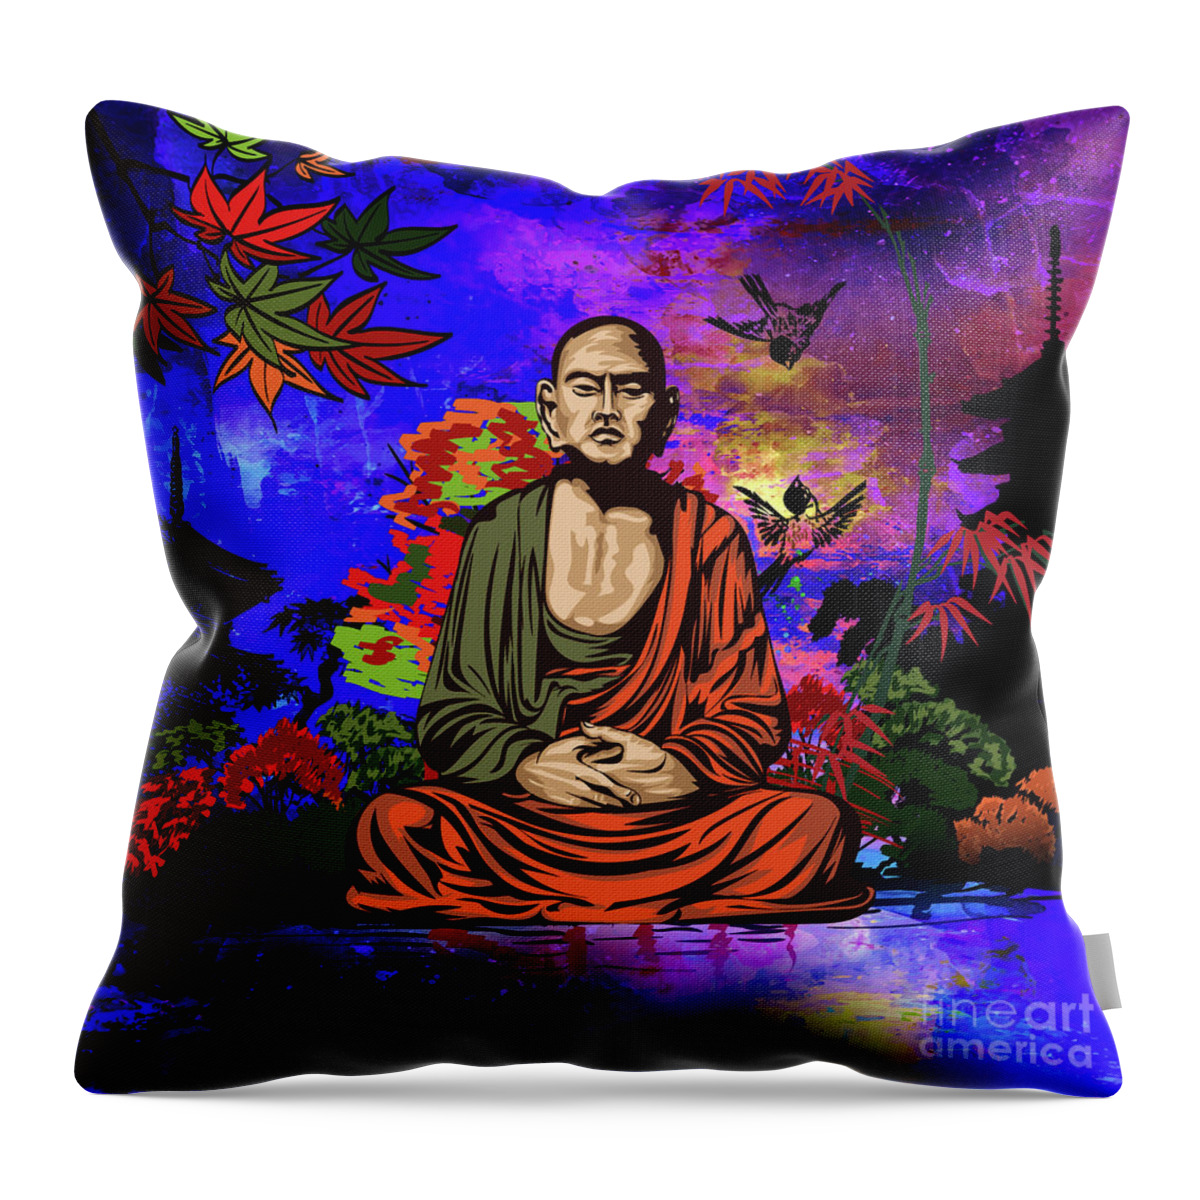 Buddhist Throw Pillow featuring the digital art Buddhist monk. by Andrzej Szczerski